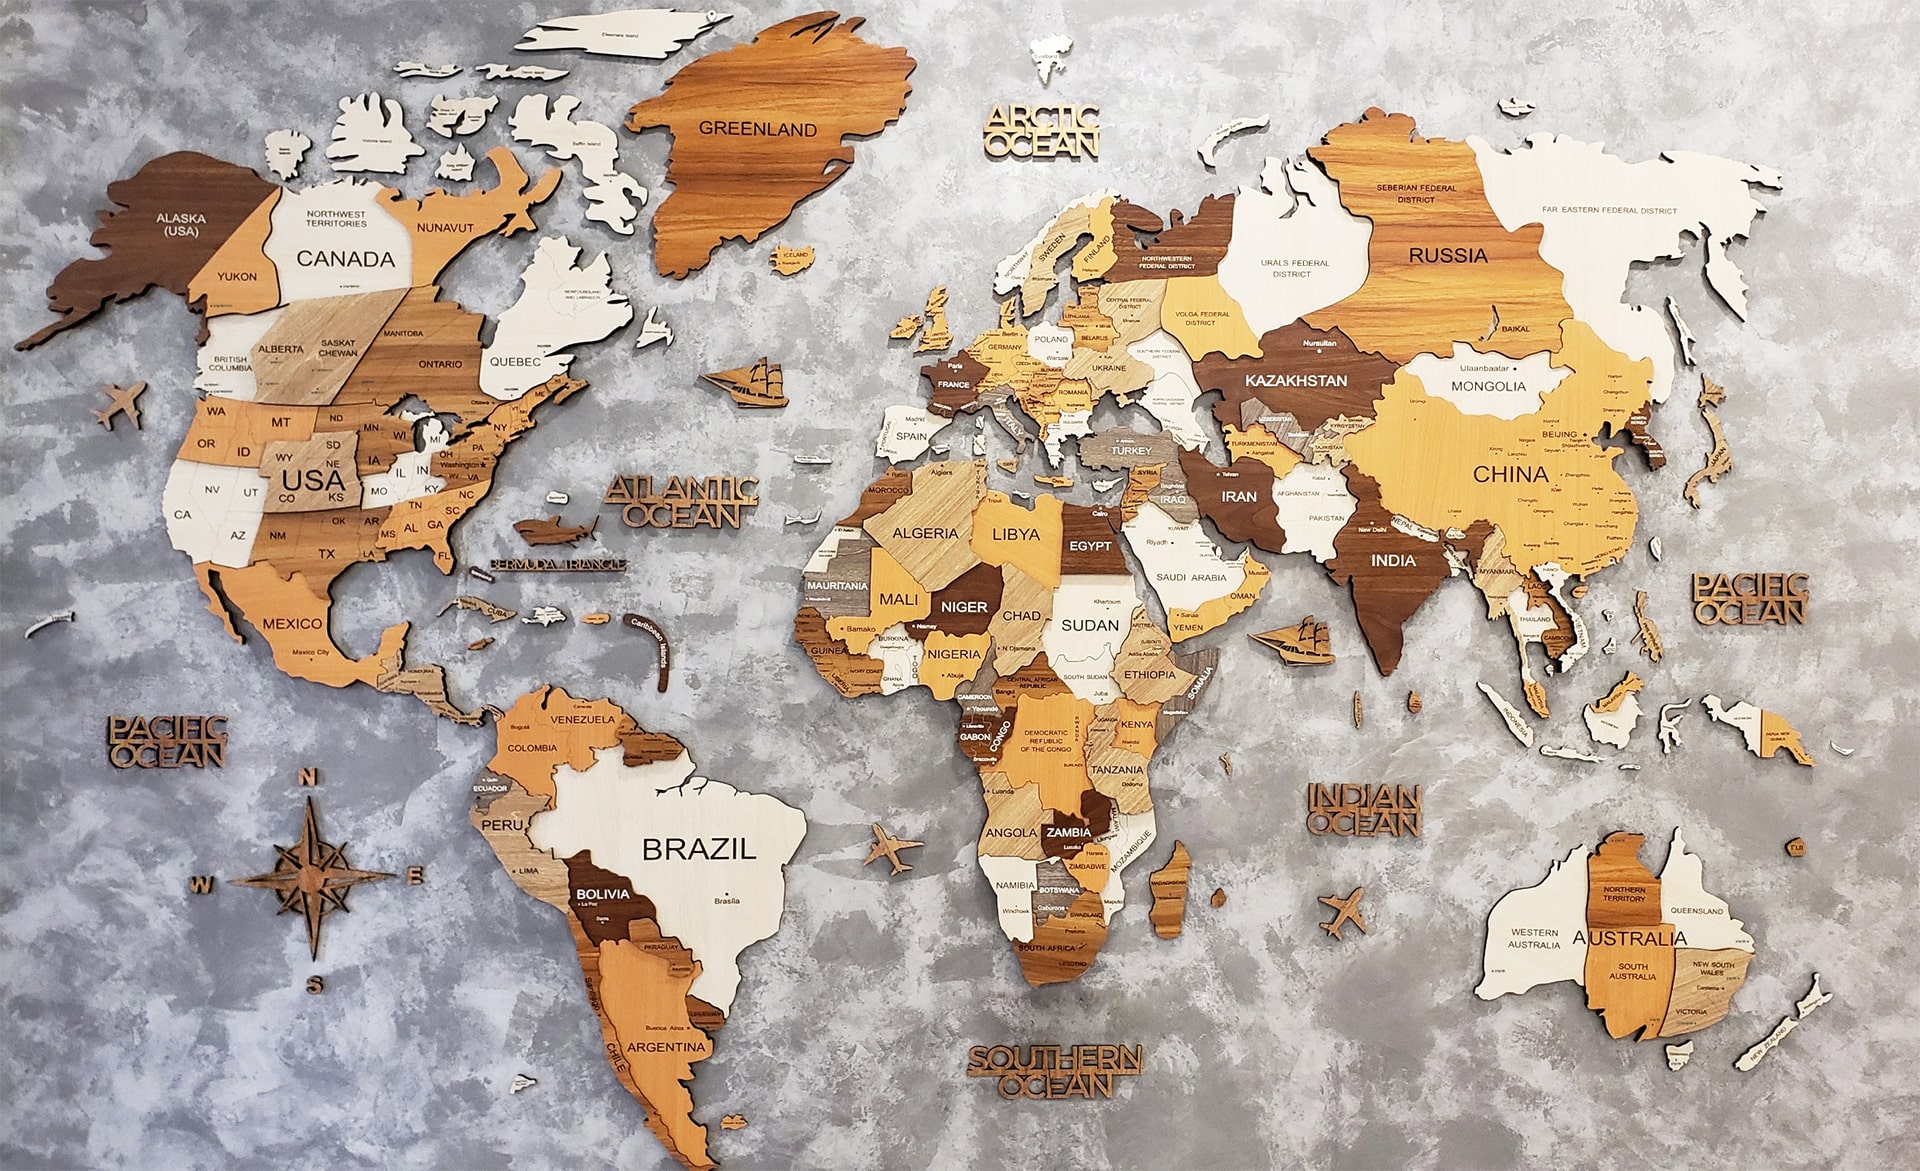 Bản đồ gỗ thế giới 3D: Sự kết hợp giữa công nghệ và nghệ thuật đã tạo ra bản đồ gỗ thế giới 3D tuyệt đẹp. Đây là một tác phẩm thủ công độc đáo, cung cấp thông tin chi tiết về các châu lục, quốc gia và thành phố trên toàn thế giới. Nếu bạn muốn tìm hiểu về thế giới của chúng ta qua mắt một nghệ sĩ, hãy xem chi tiết hình ảnh liên quan.